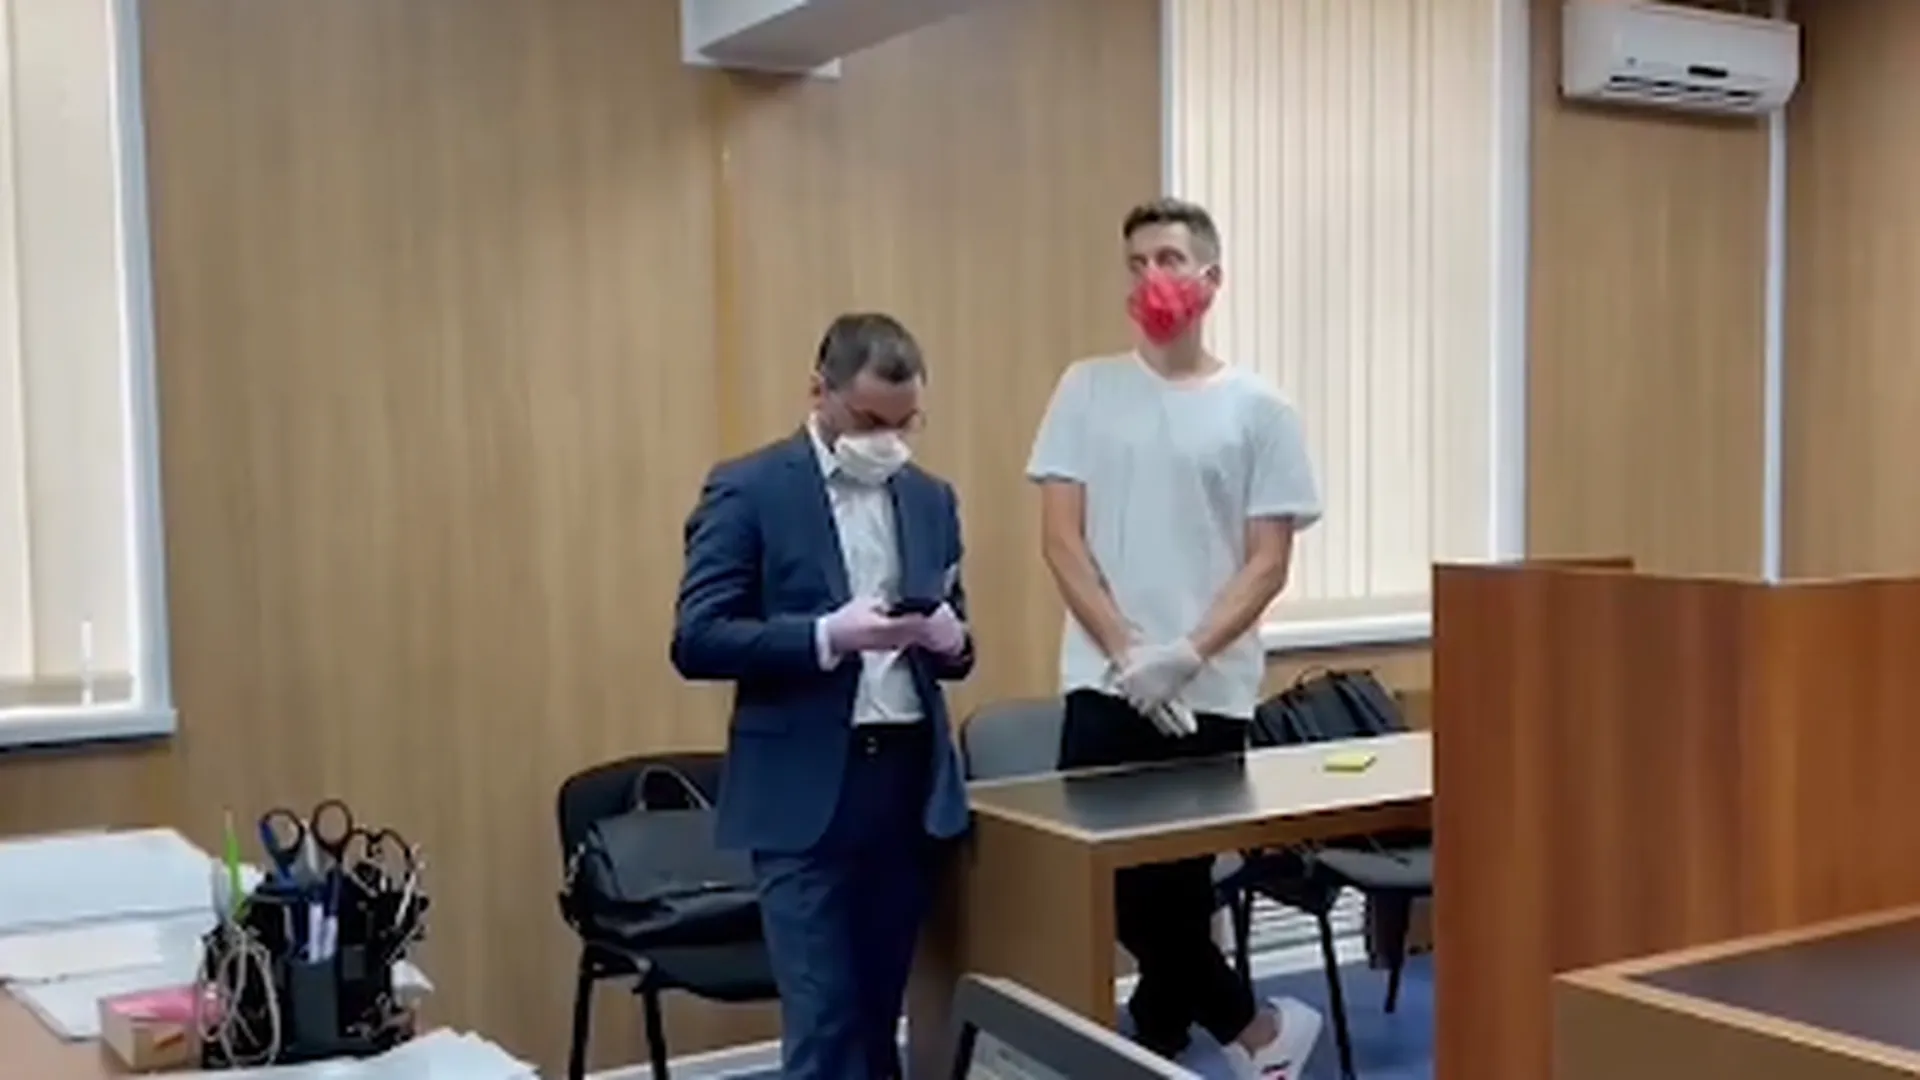 Дудя оштрафовали на 100 тысяч рублей по делу о пропаганде наркотиков